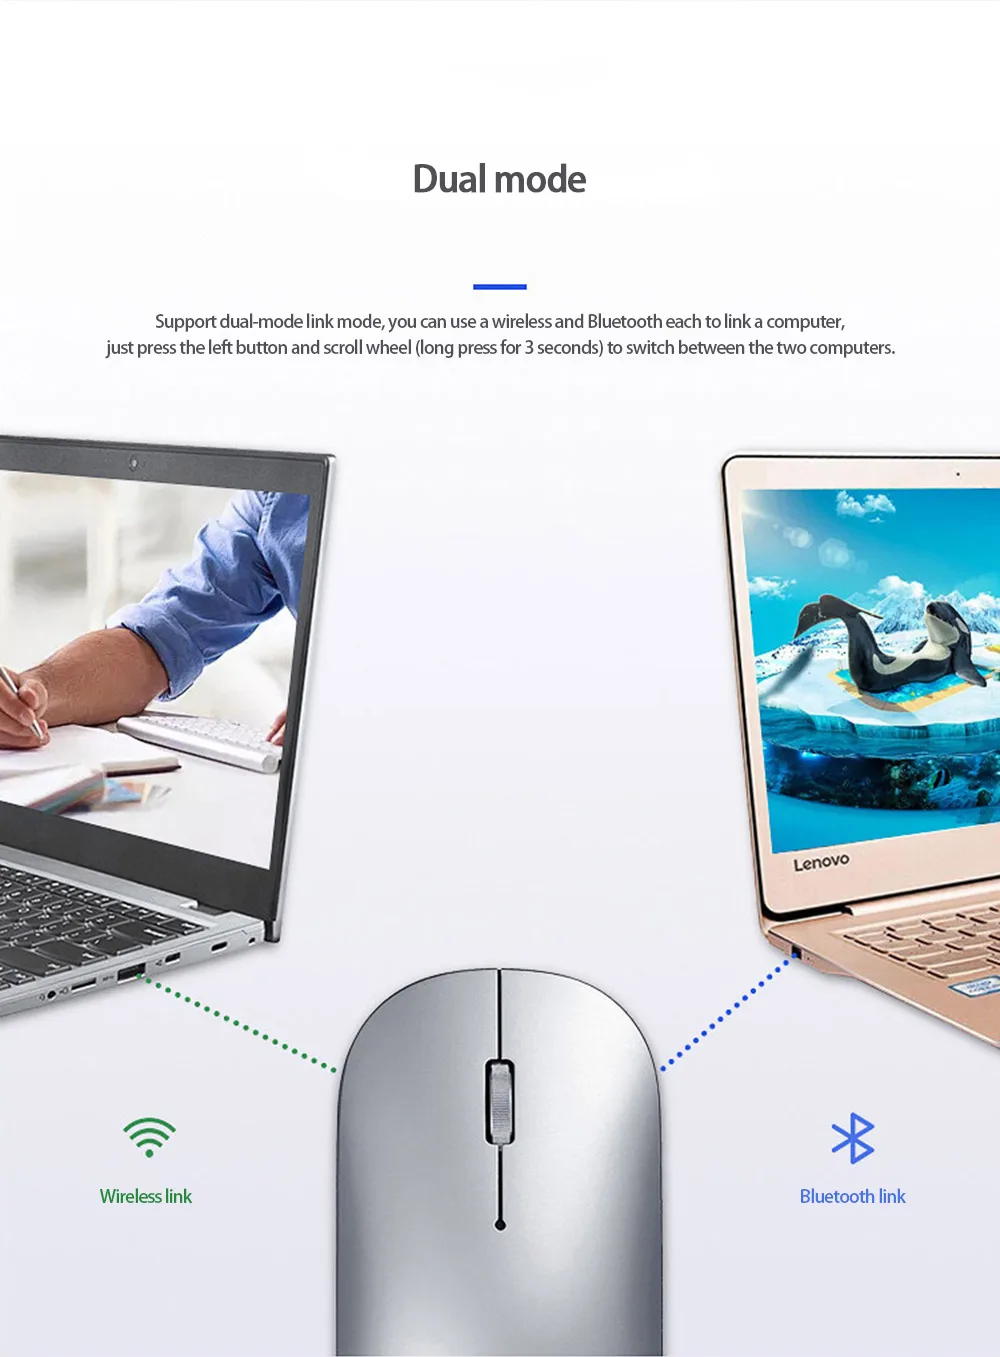 Lenovo мышь xiaoxin air USB Беспроводная Bluetooth Двухрежимная сенсорная мышь 4K dpi для Windows7 8 10, Mac